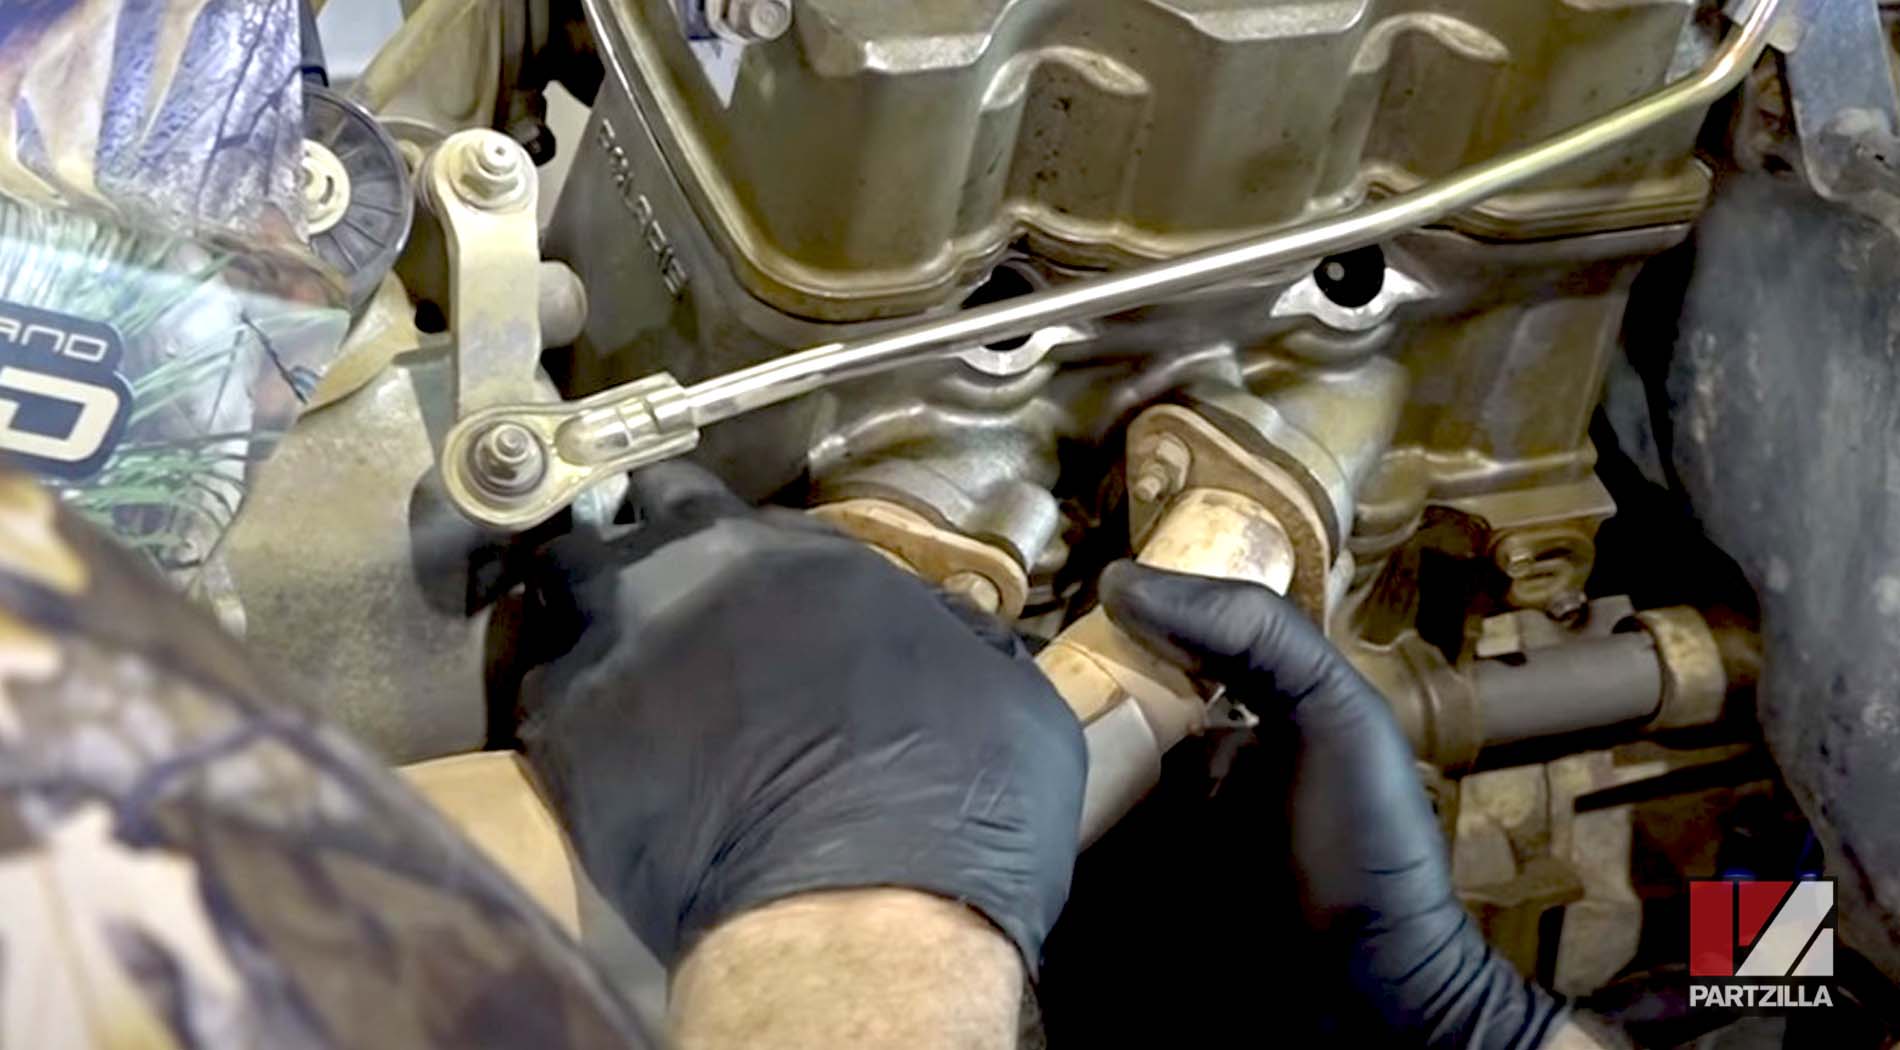 Polaris Sportsman engine rebuild exhaust system installation